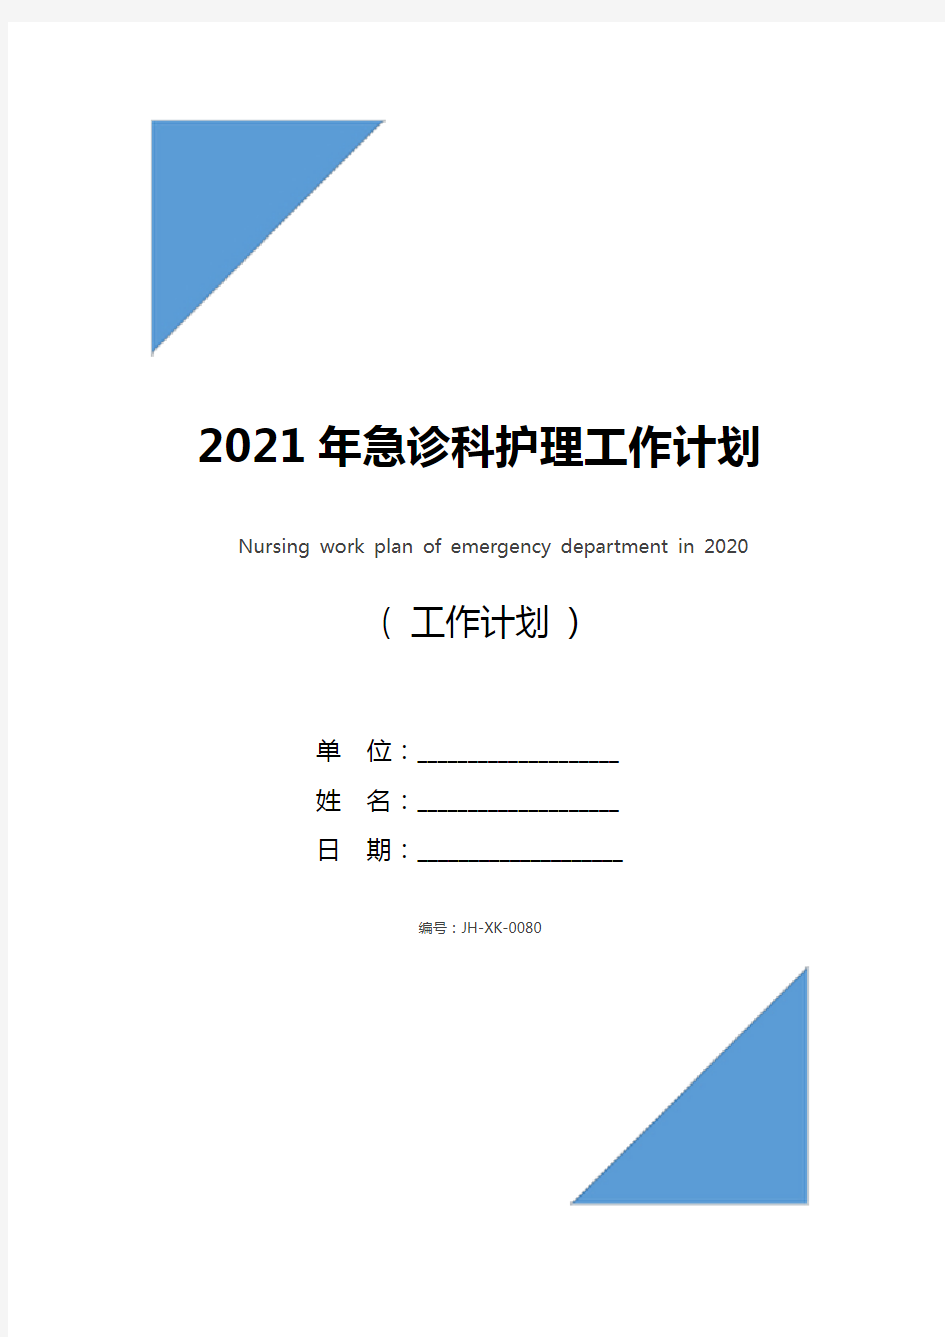 2021年急诊科护理工作计划(标准版)